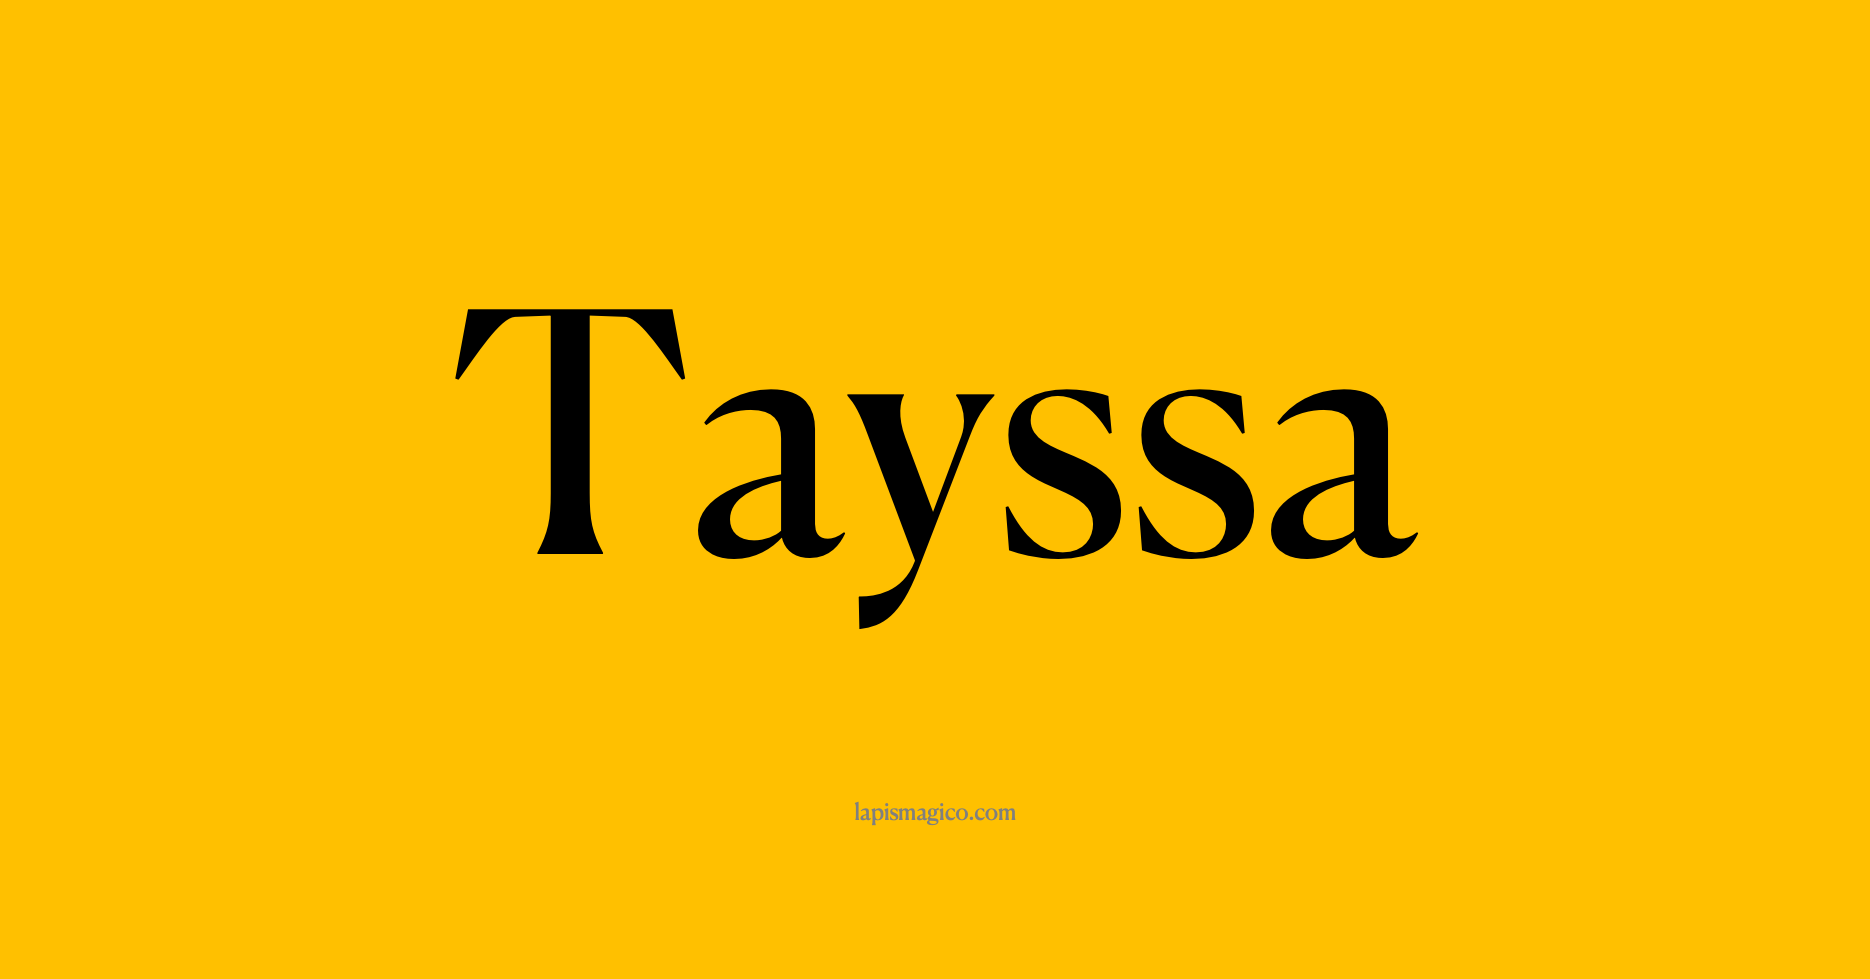 Nome Tayssa, ficha divertida com pontilhado para crianças